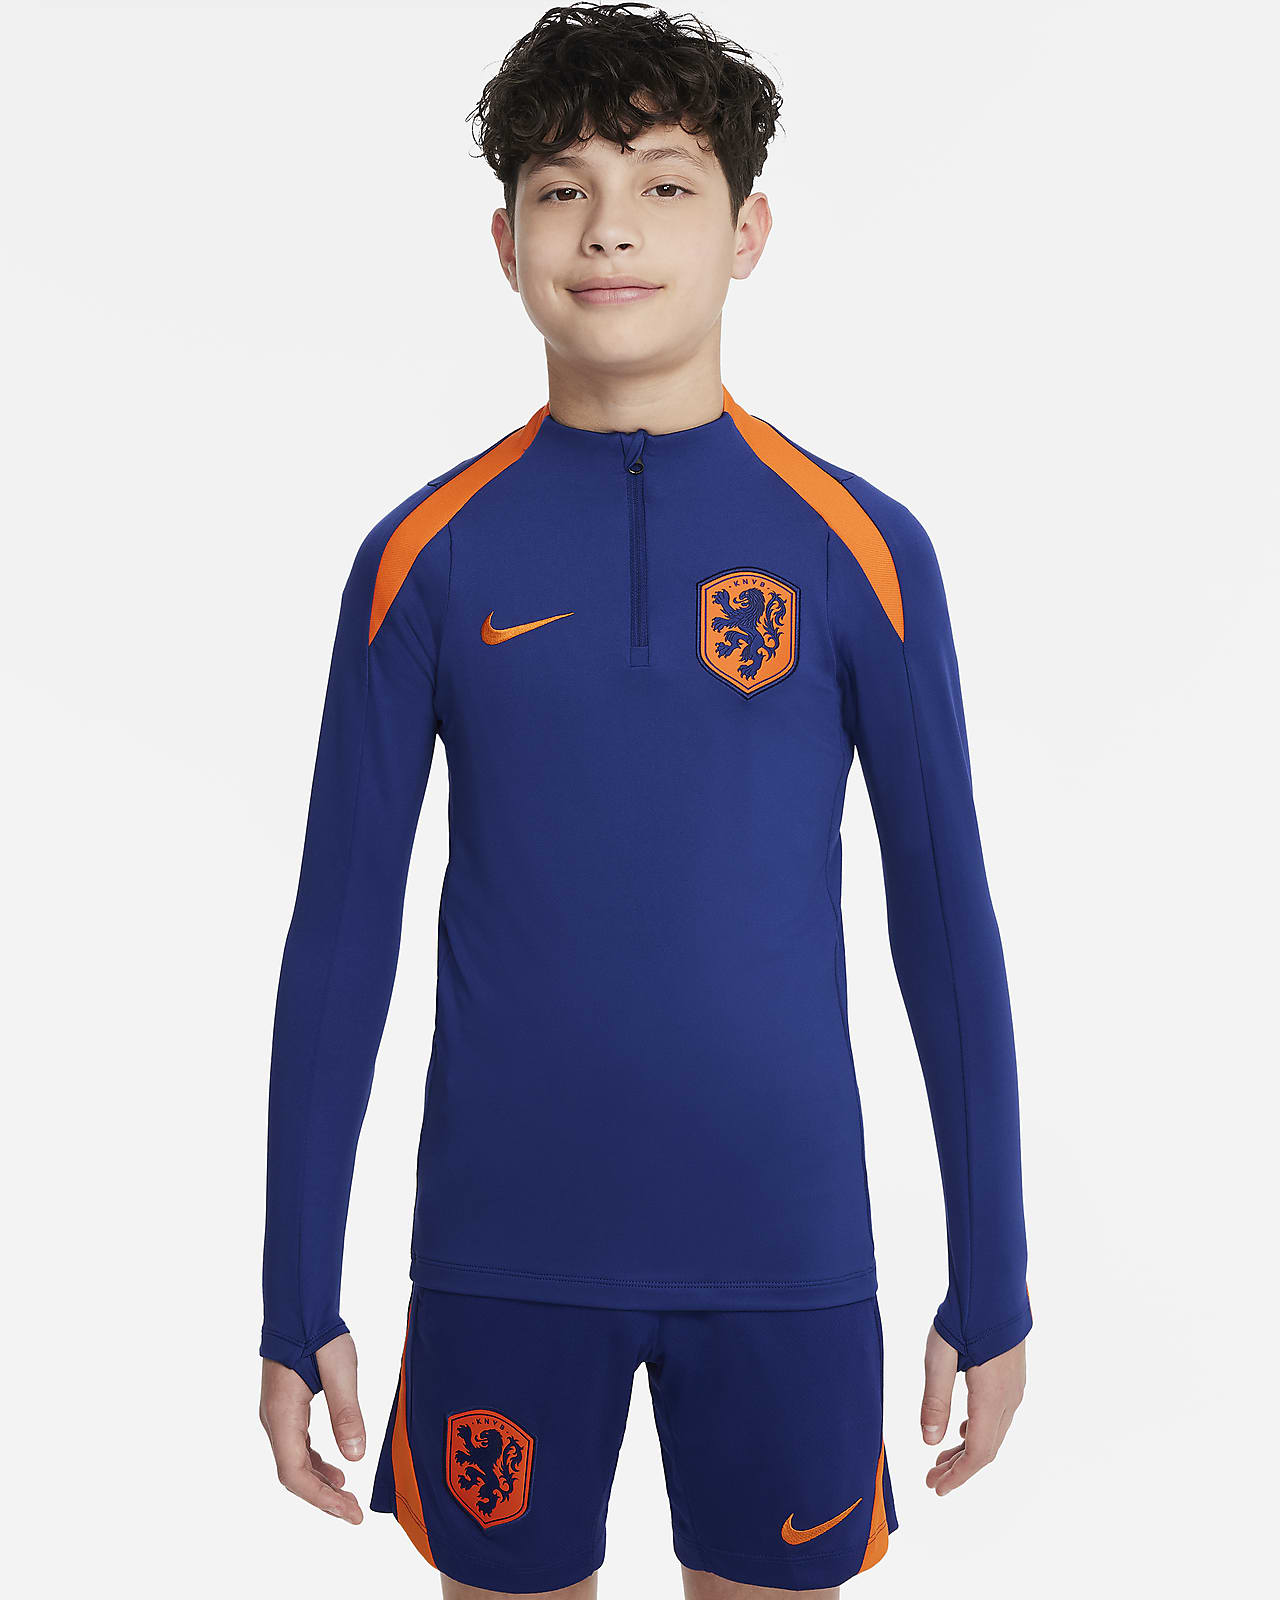 Nederland Strike Nike Dri-FIT voetbaltrainingstop voor kids